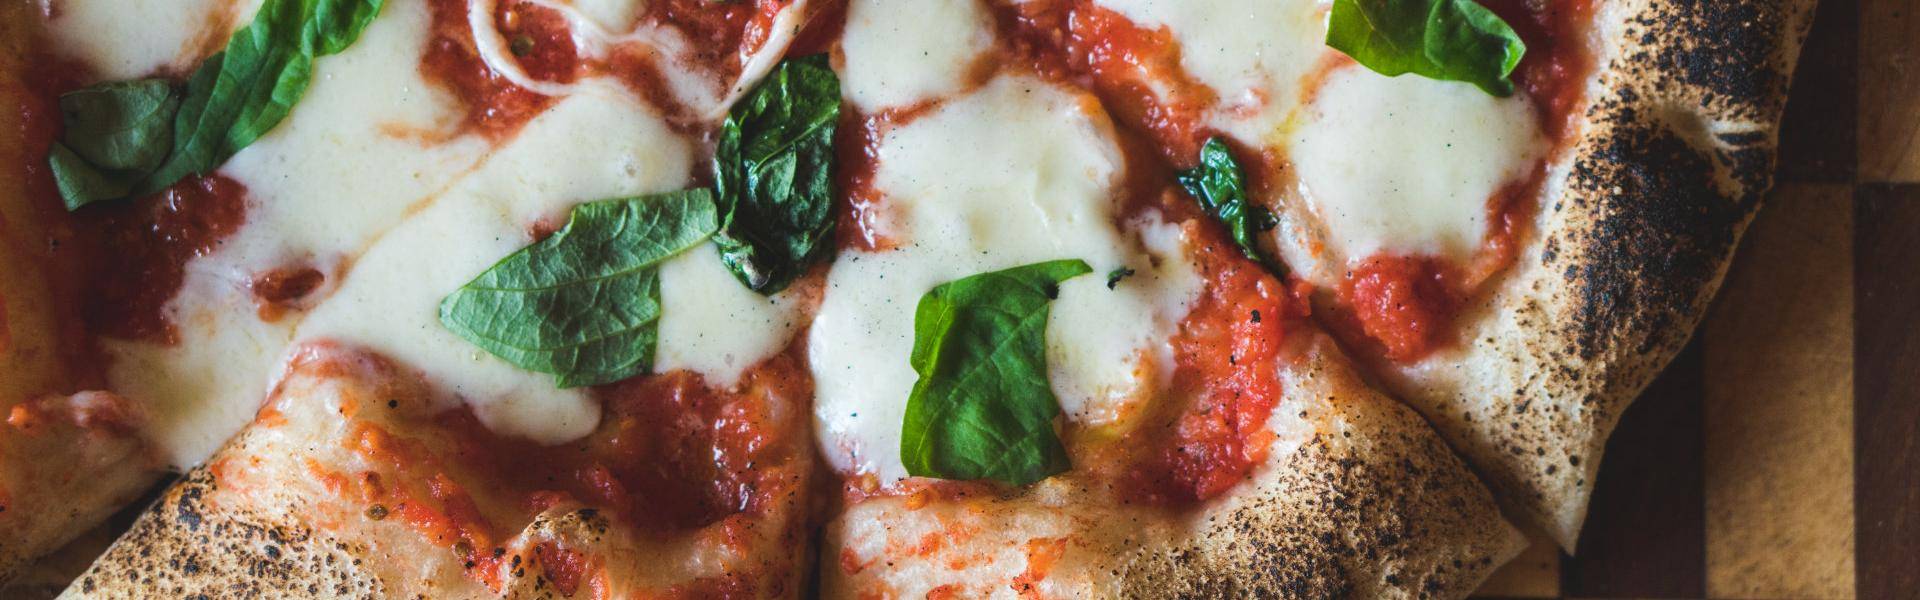 La pizza è la pietanza italiana più amata